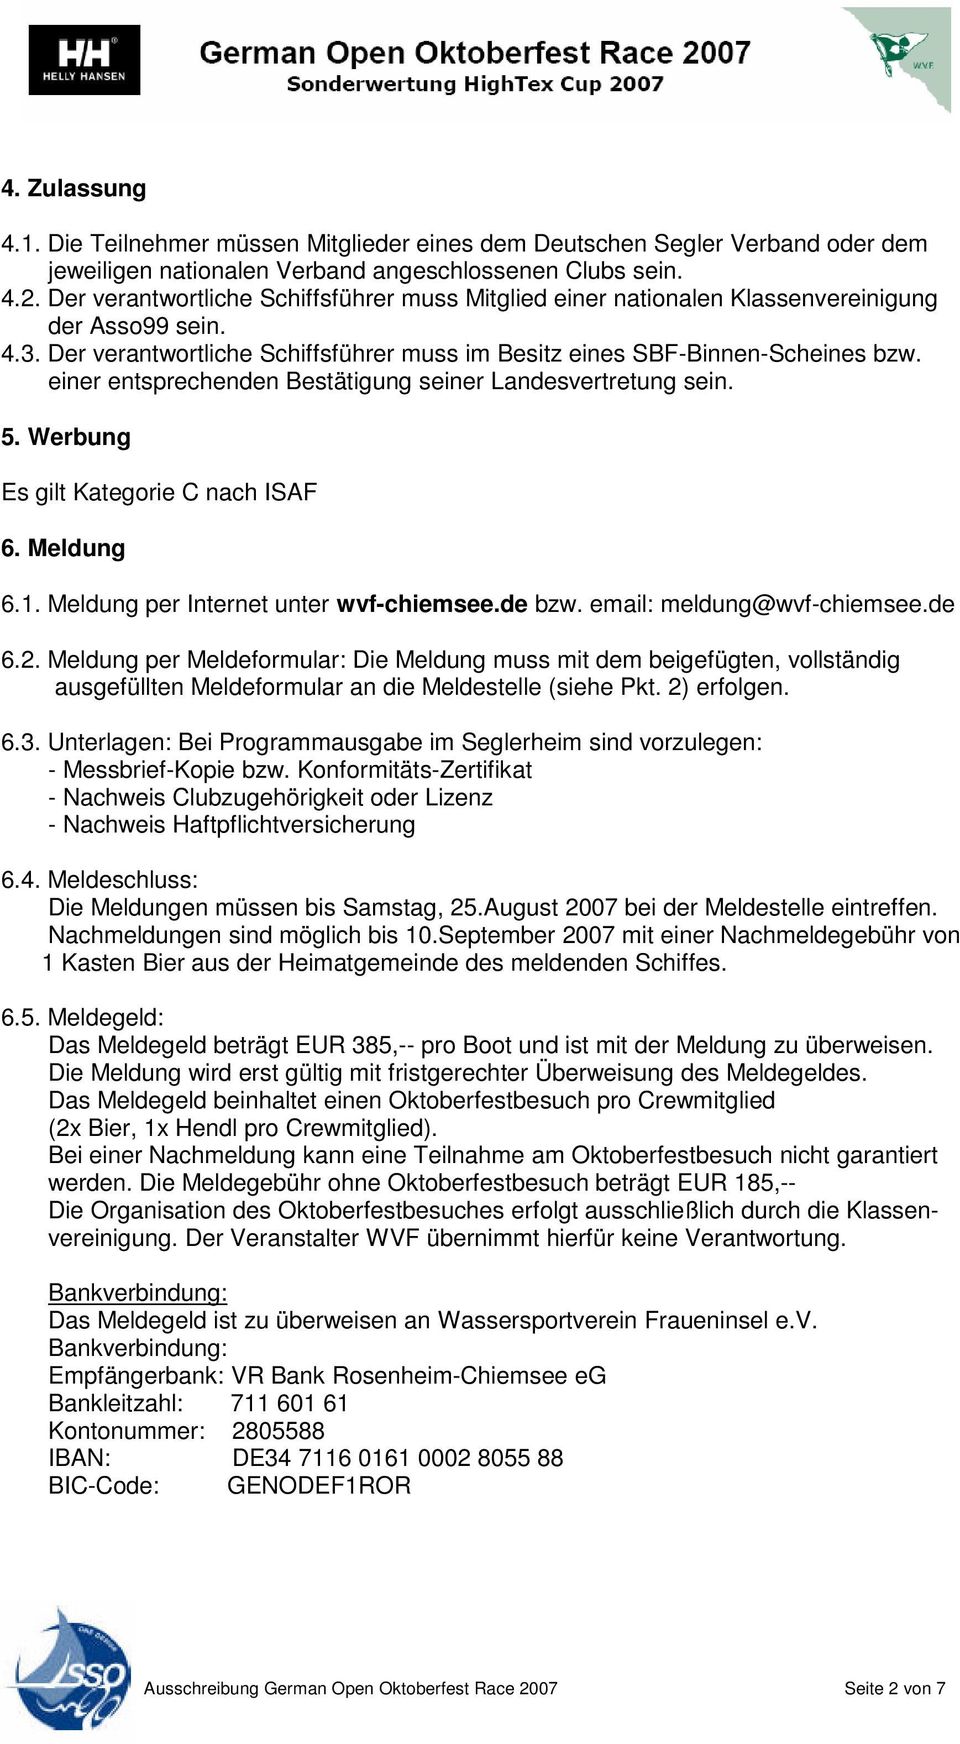 einer entsprechenden Bestätigung seiner Landesvertretung sein. 5. Werbung Es gilt Kategorie C nach ISAF 6. Meldung 6.1. Meldung per Internet unter wvf-chiemsee.de bzw. email: meldung@wvf-chiemsee.